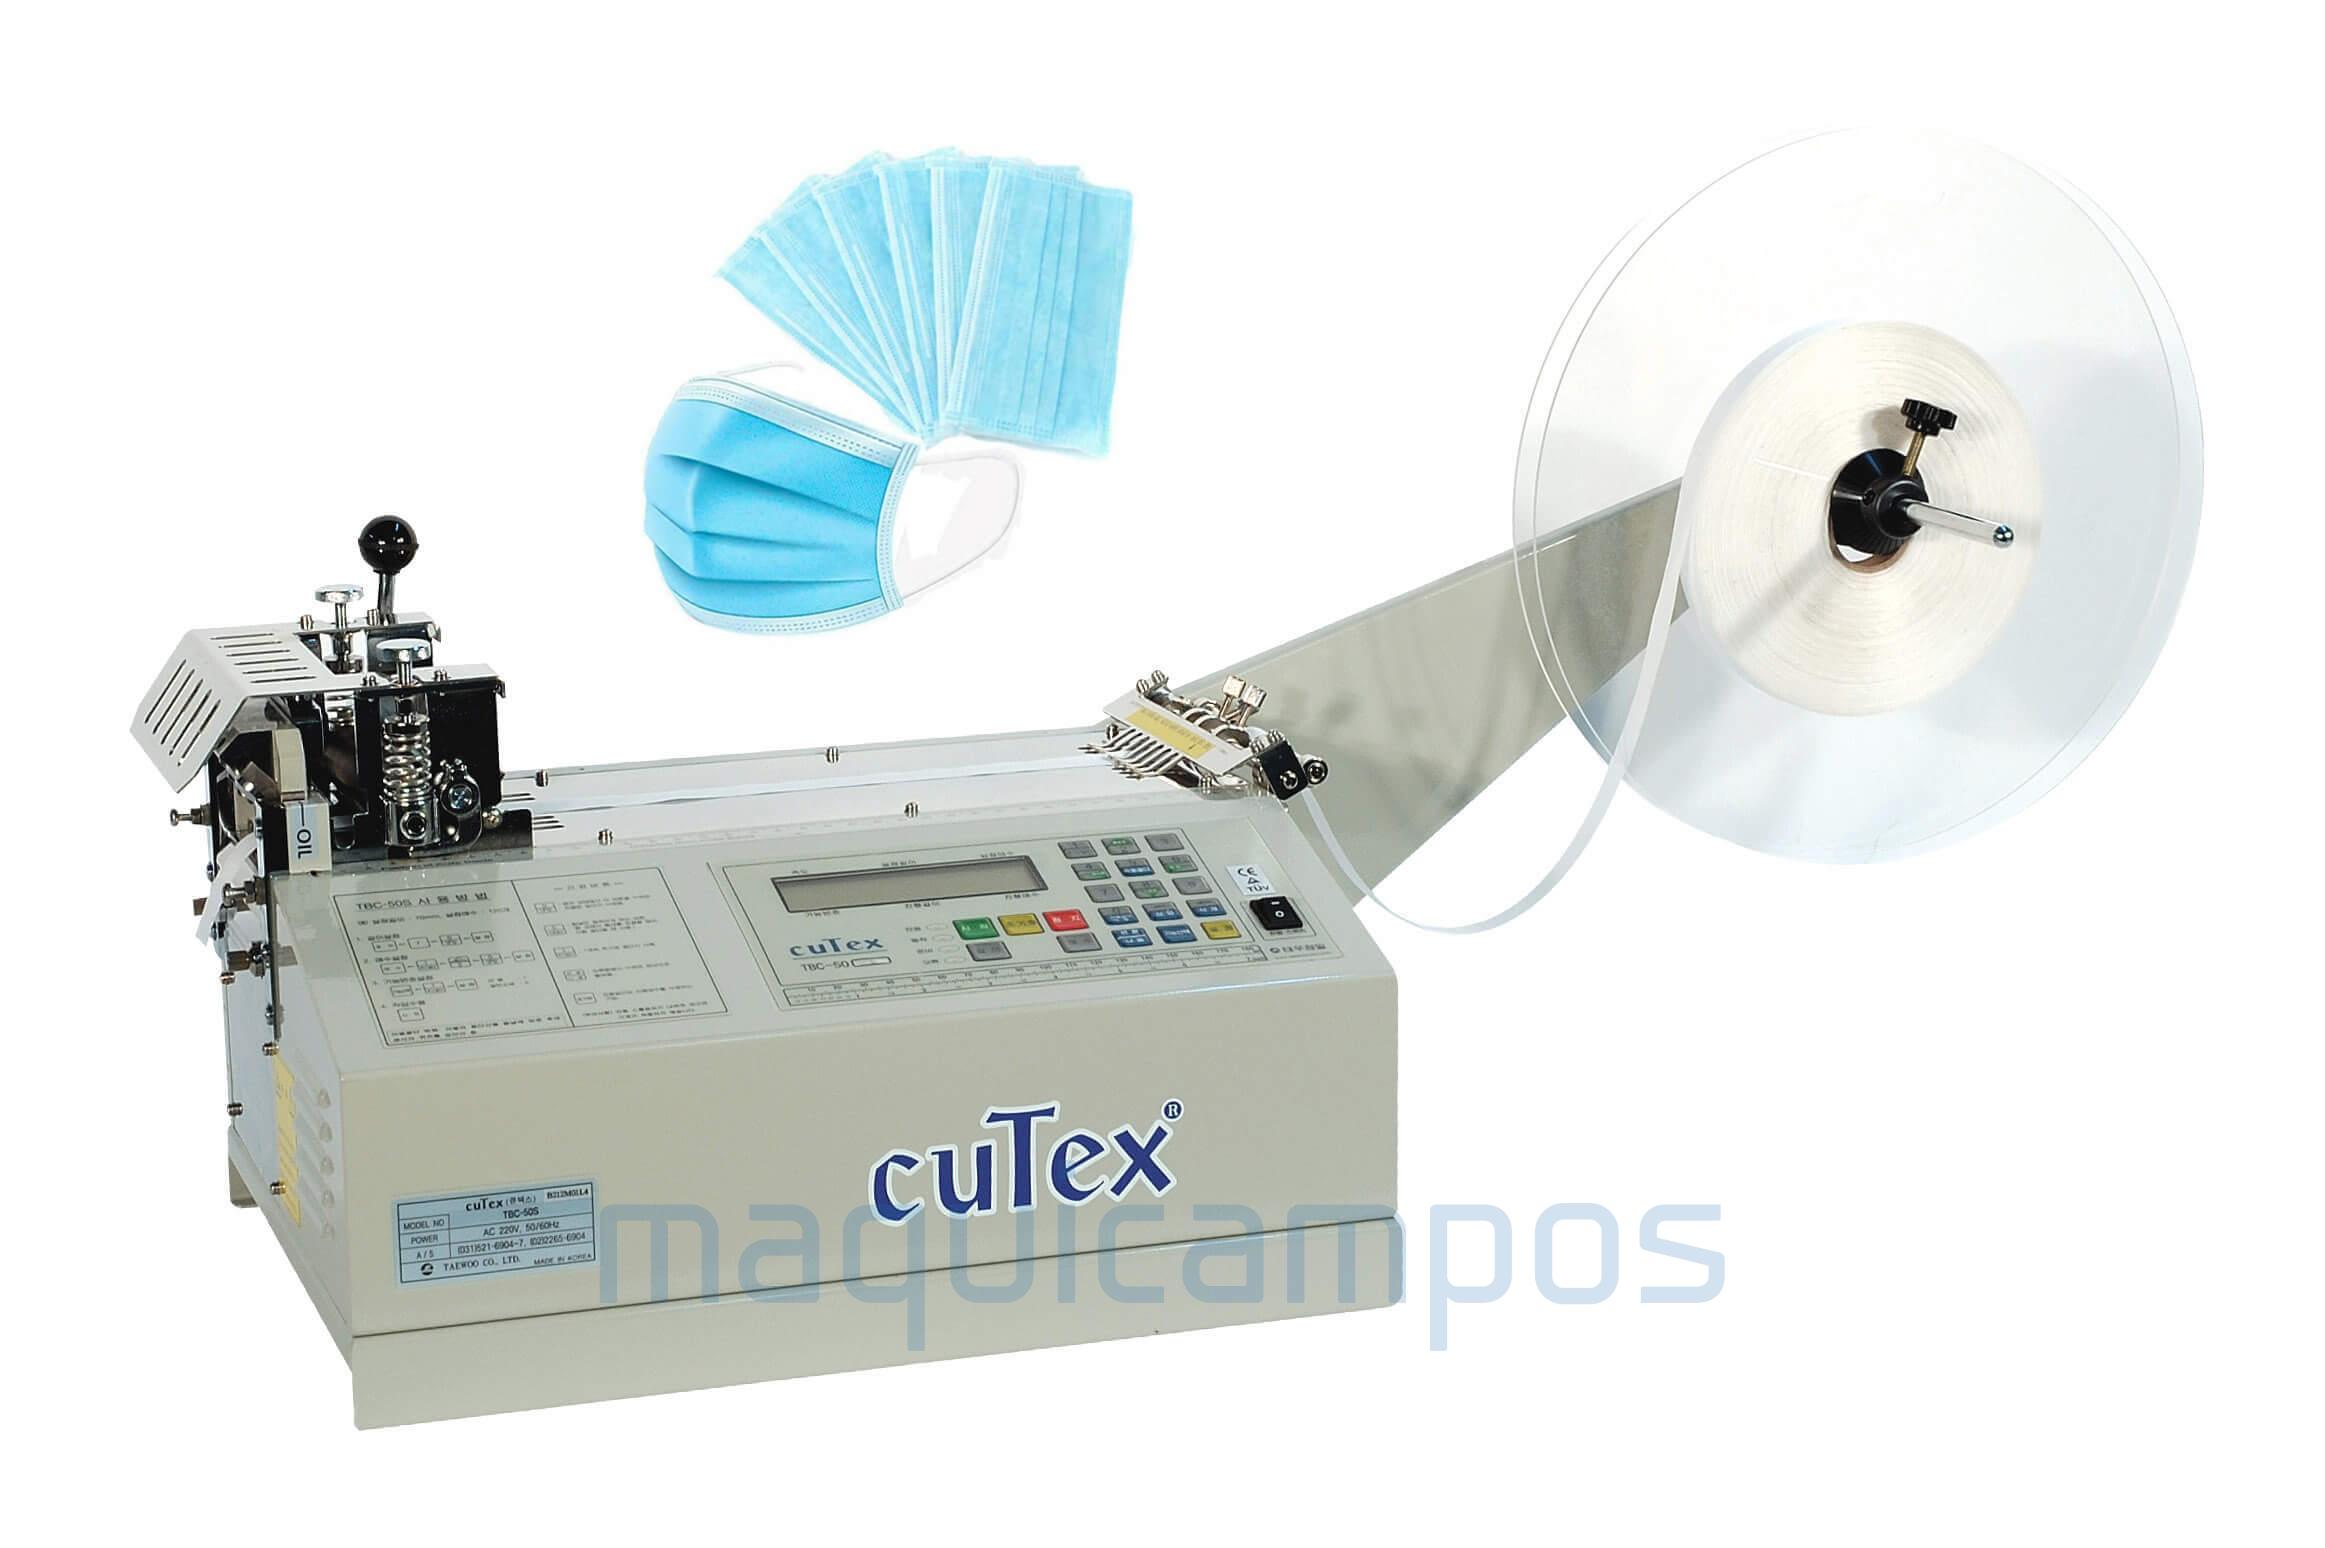 Cutex TBC-50 Máquina de Corte de Mascarillas Quirúrgicas